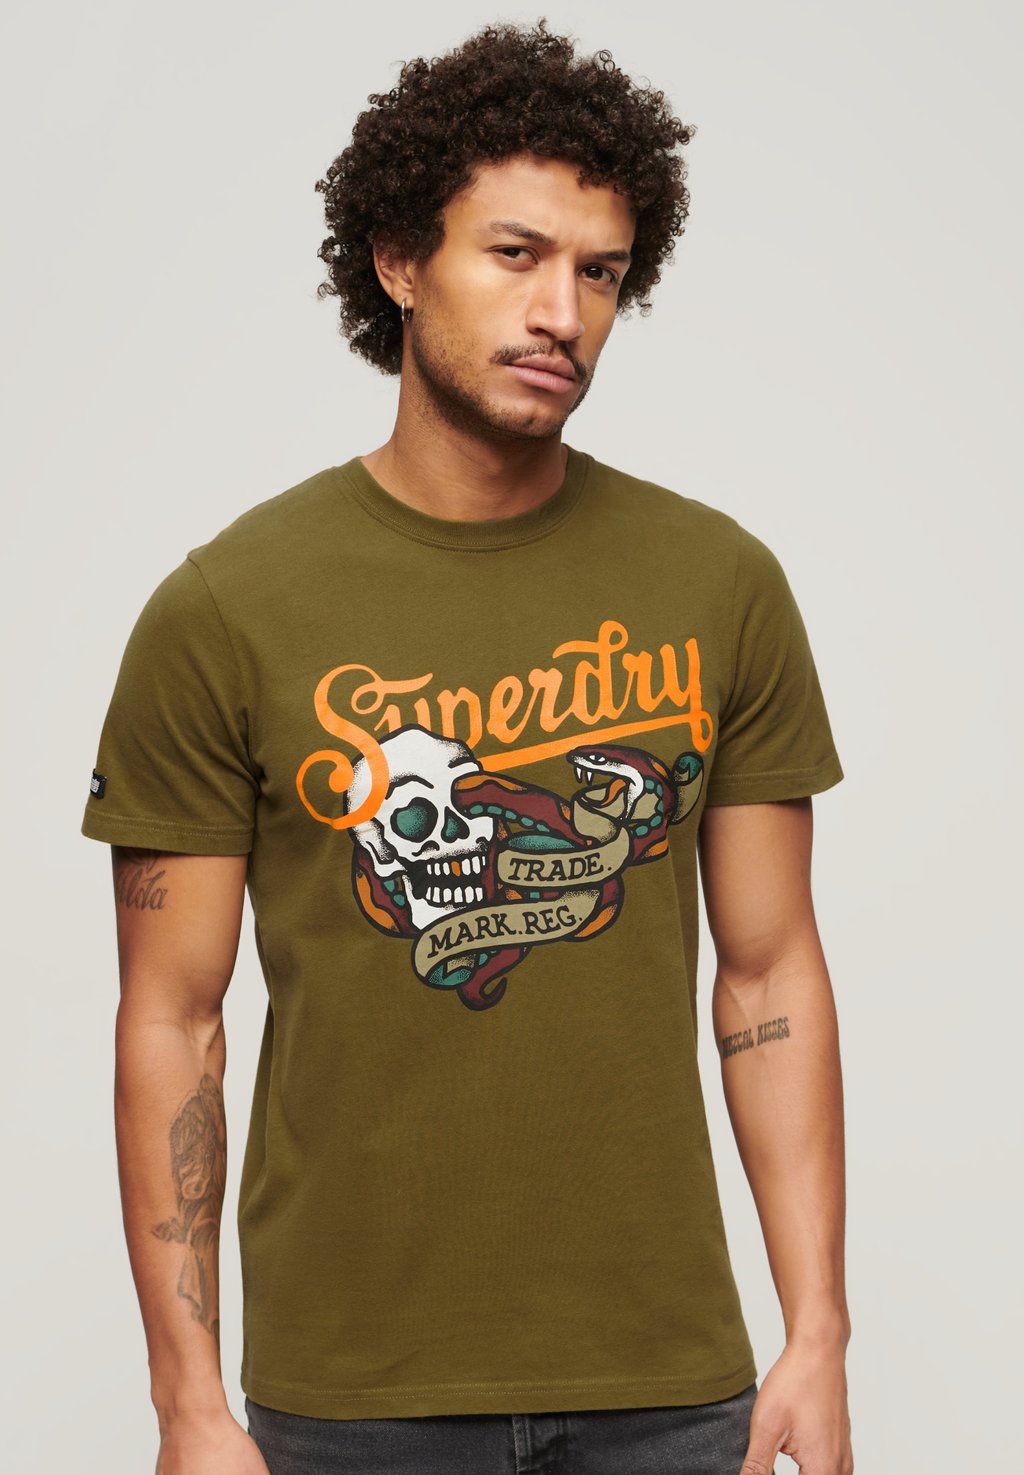 футболка с принтом tattoo script superdry цвет fir green Футболка с принтом TATTOO SCRIPT Superdry, цвет fir green